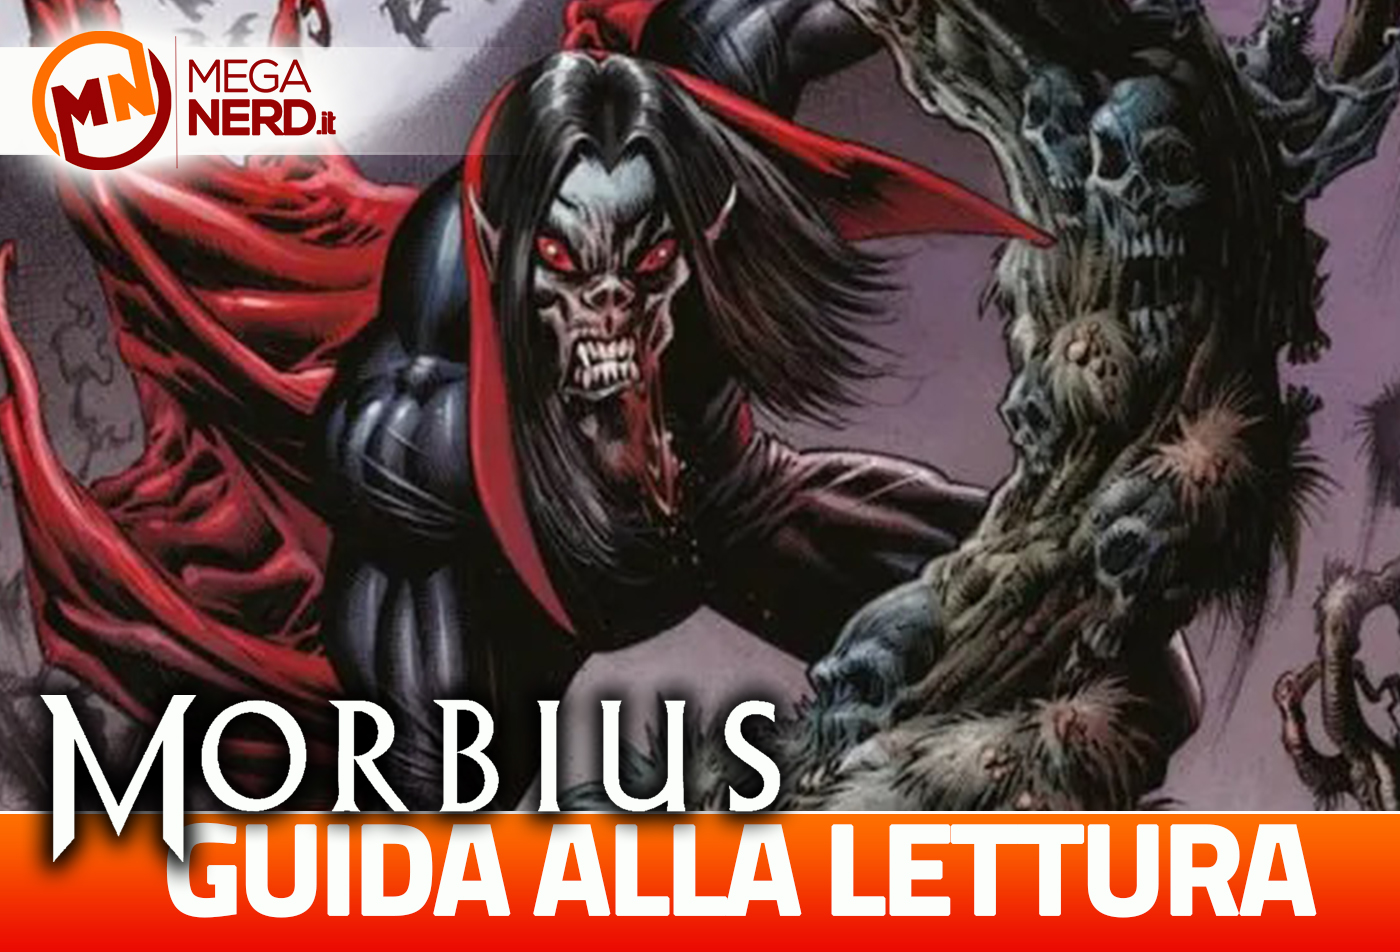 Morbius - I fumetti da leggere per conoscere meglio il personaggio